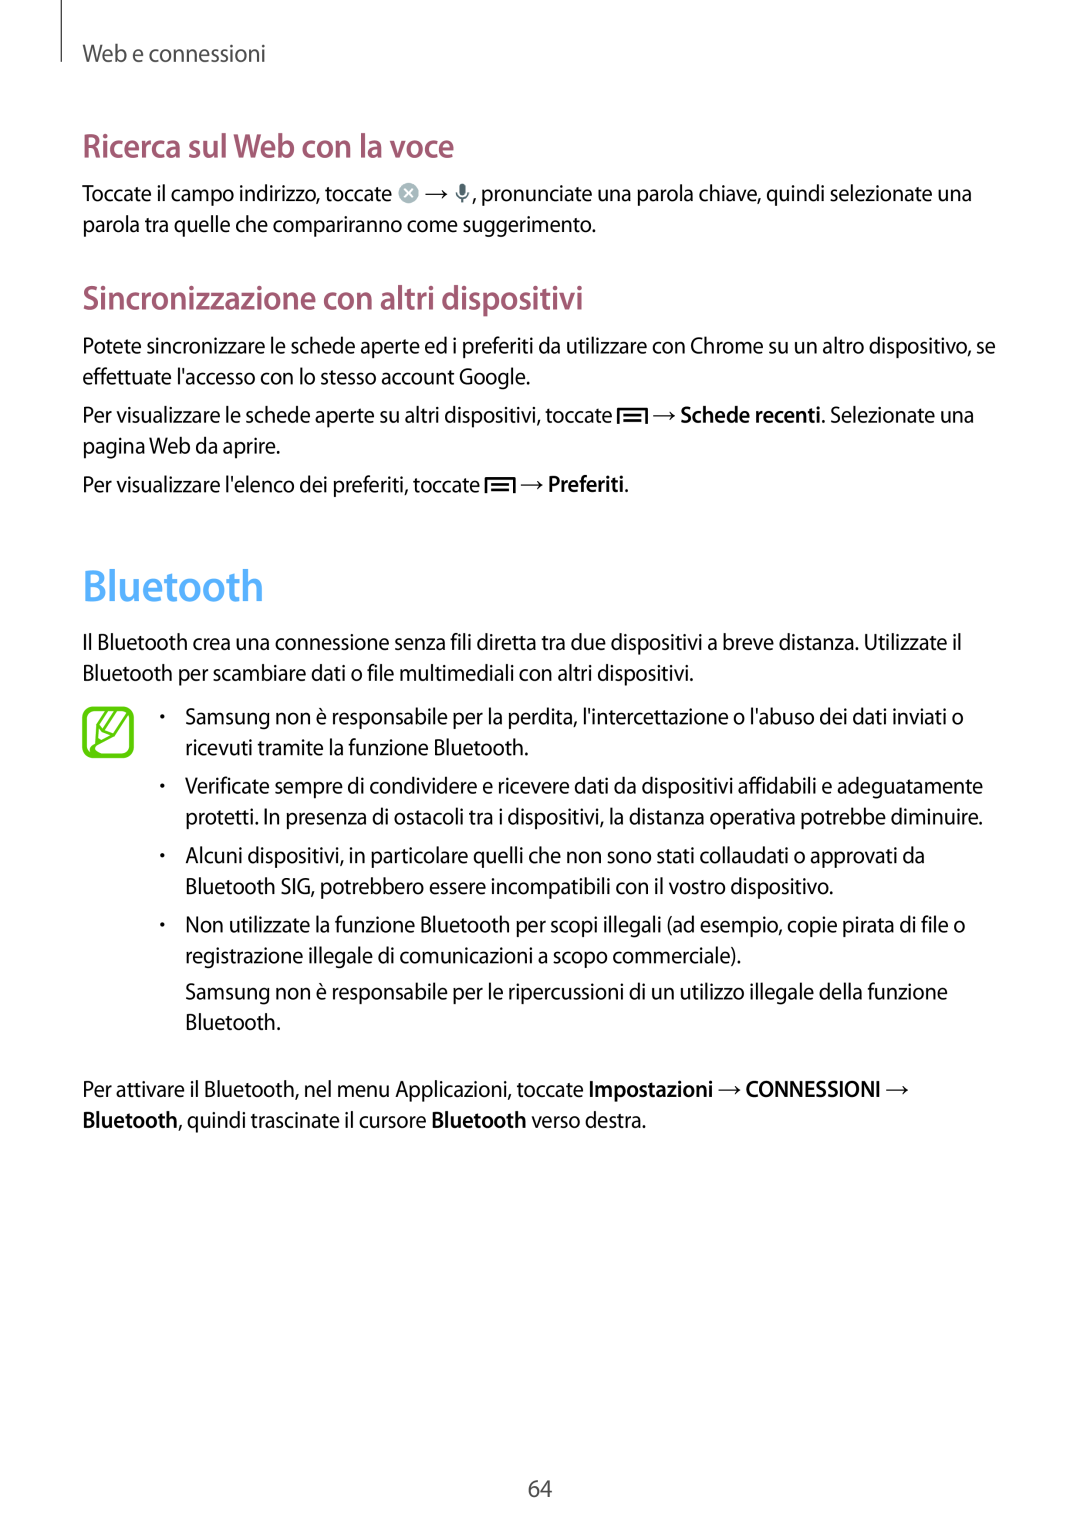 Samsung GT-I9515ZKAPLS Bluetooth, Sincronizzazione con altri dispositivi, Ricerca sul Web con la voce, Web e connessioni 